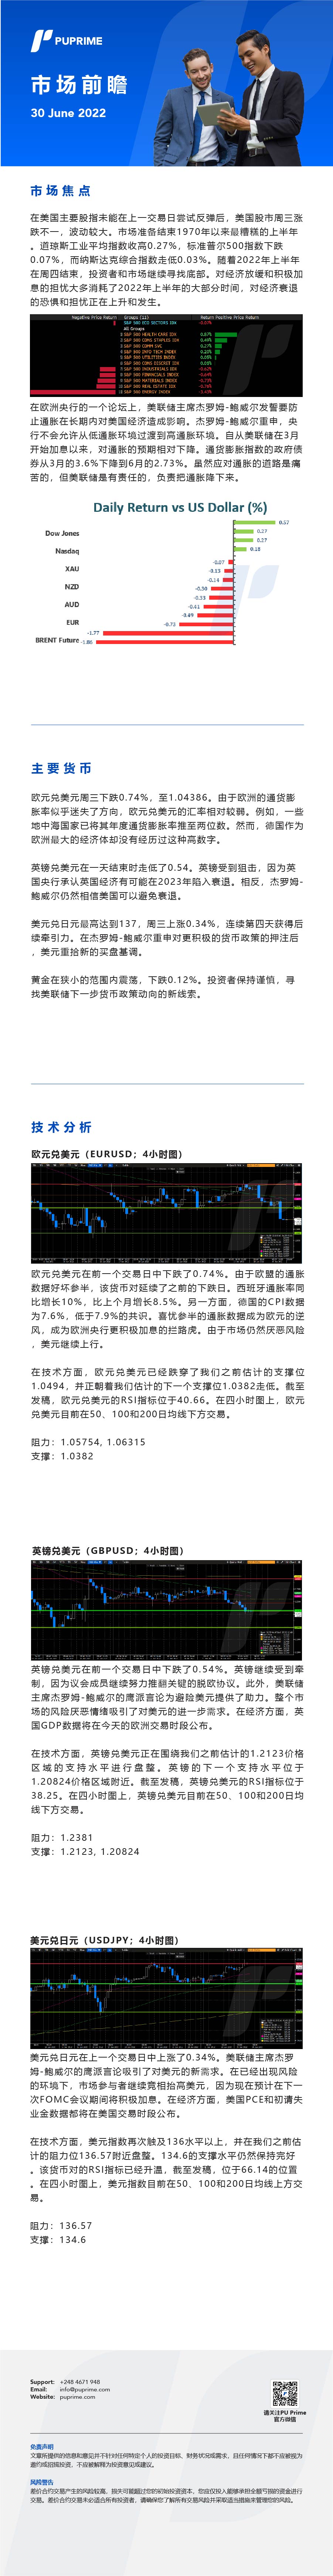 30062022 Daily Market Analysis__CHN.jpg